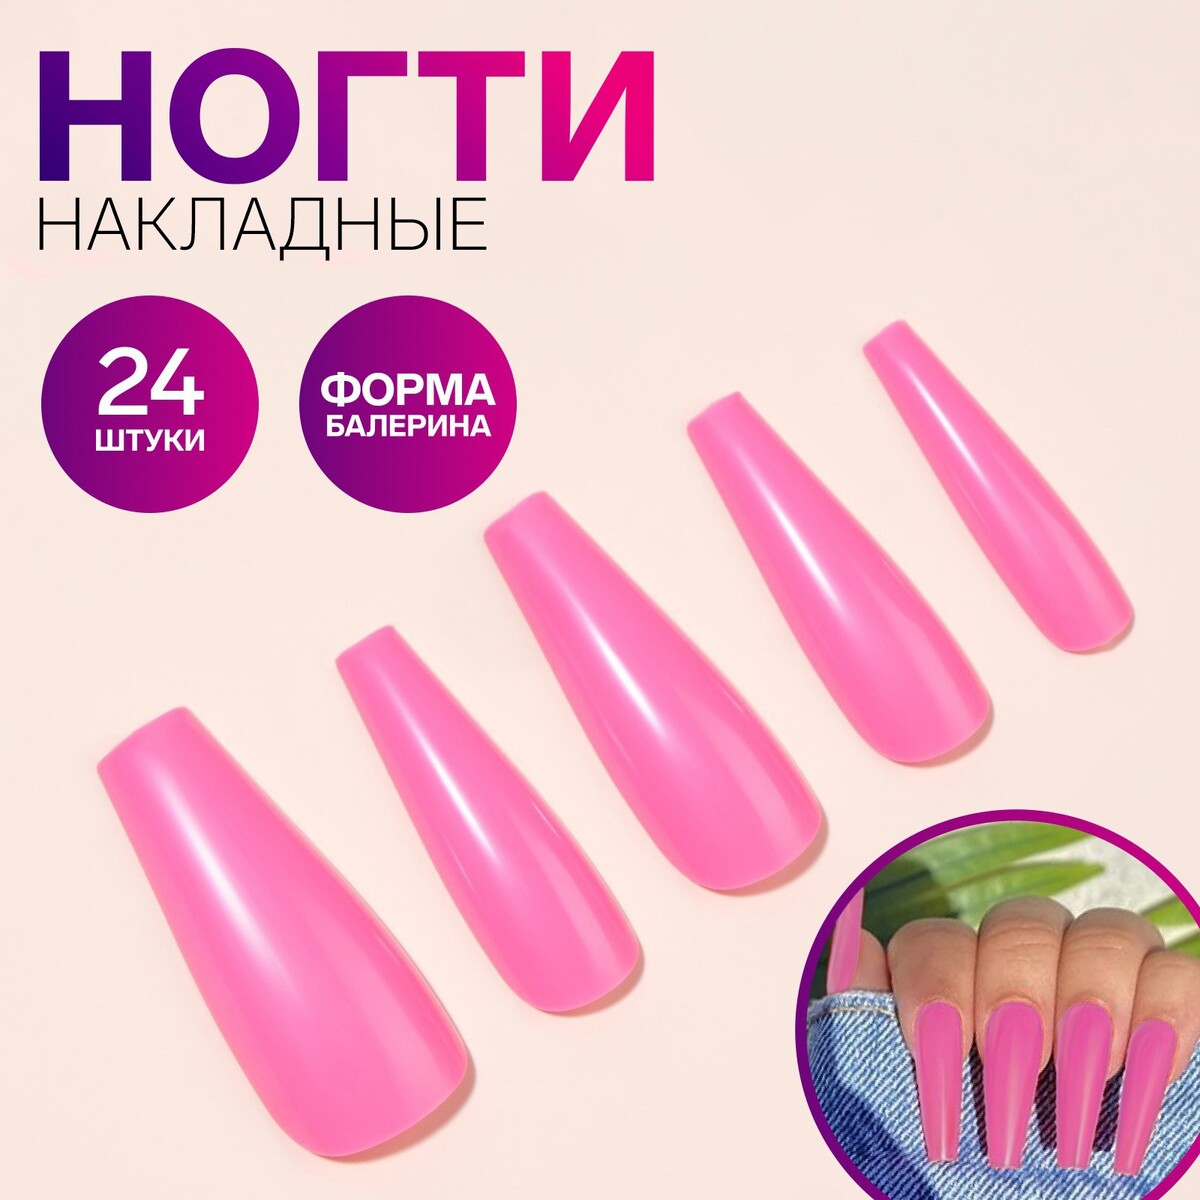 Накладные ногти, 24 шт, форма балерина, цвет розовый накладные ногти 24 шт форма балерина неоновый желтый